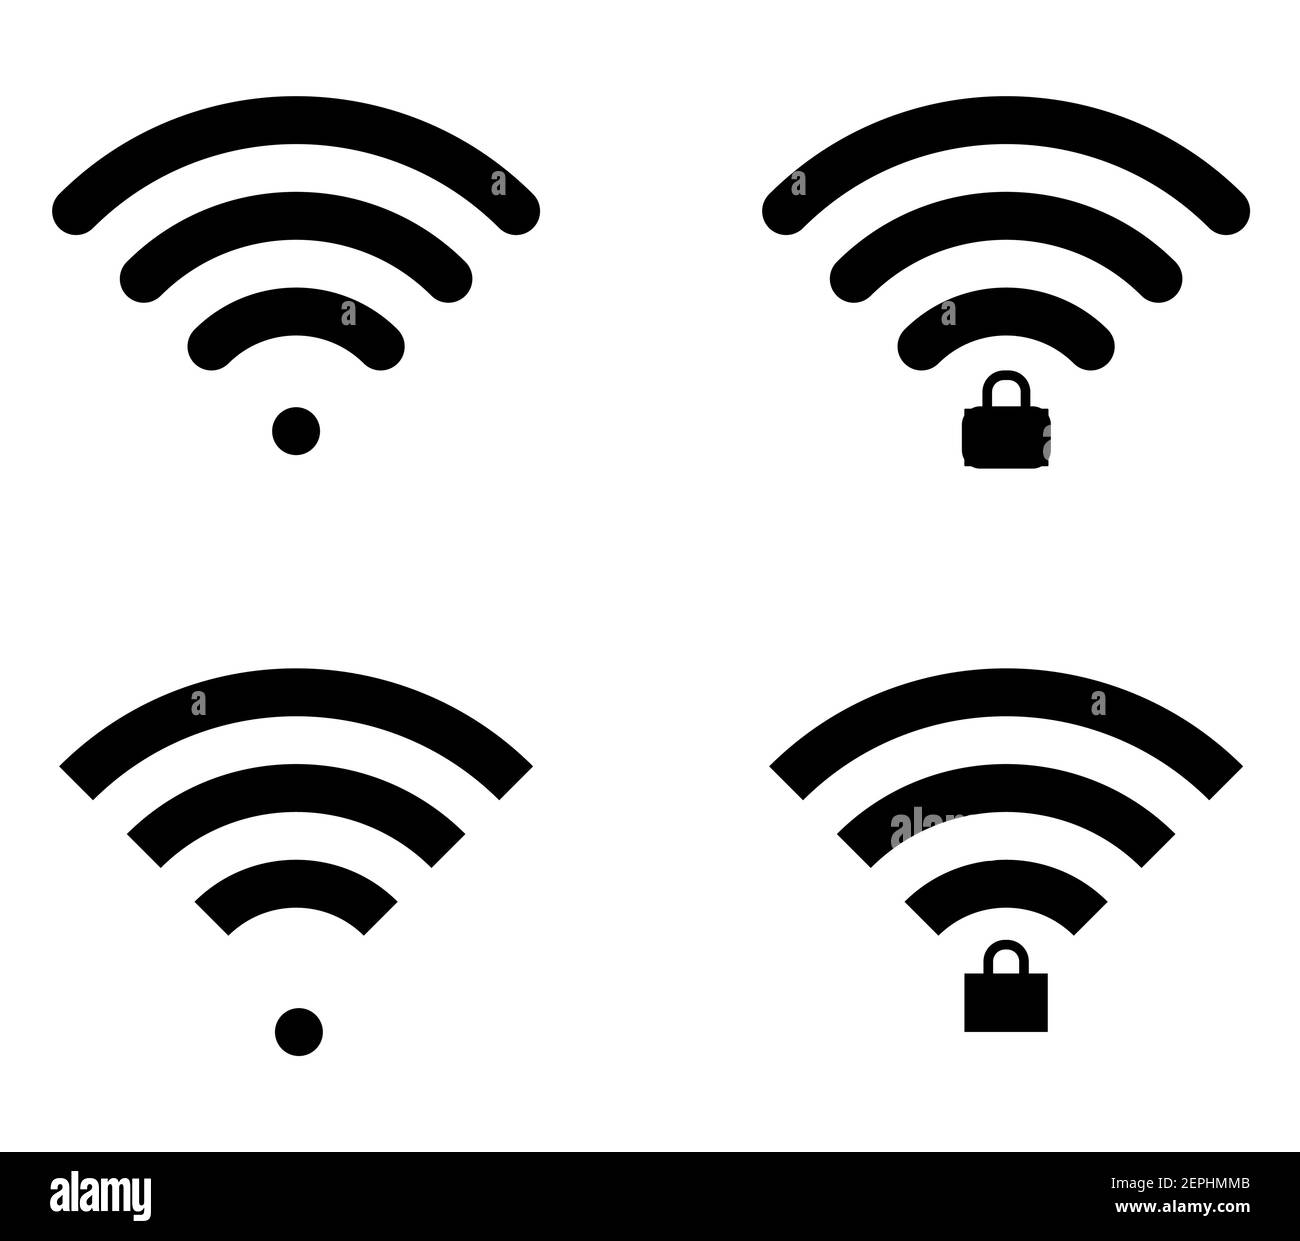 Vier Wifi-Symbole in zwei Formen - rund und gerade, verriegelt und entsperrt Varianten. Flaches Design für Smartphones und Grafik. Stock Vektor